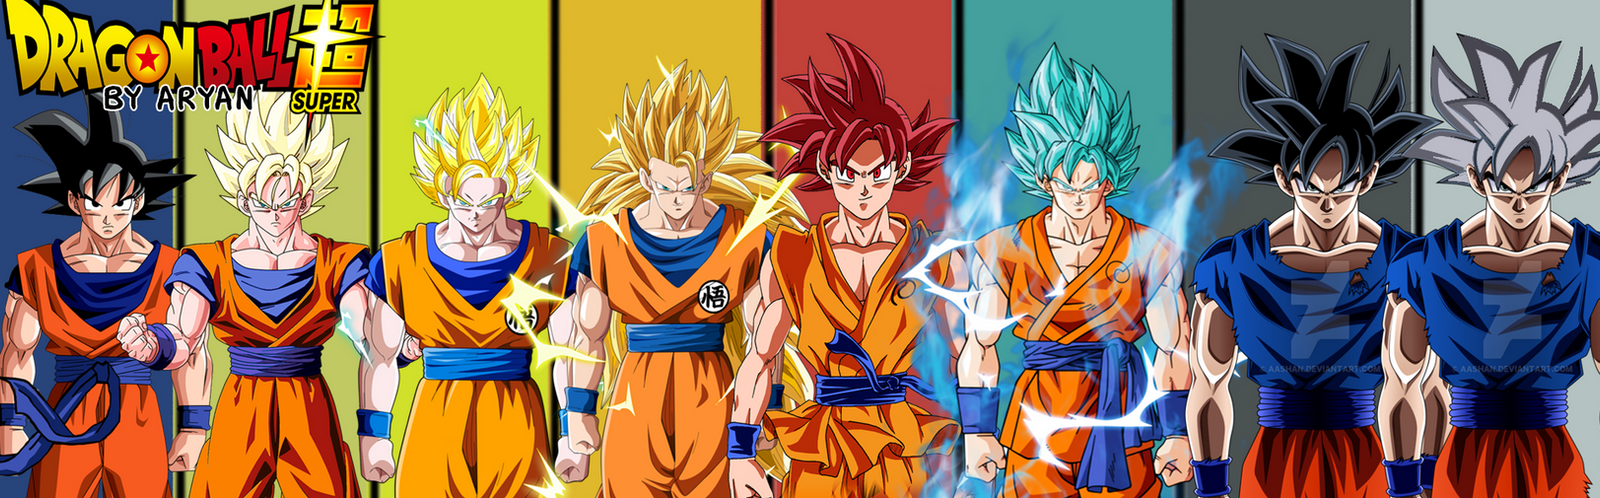 saiyan transformations  Goku super, Goku super saiyan, Goku